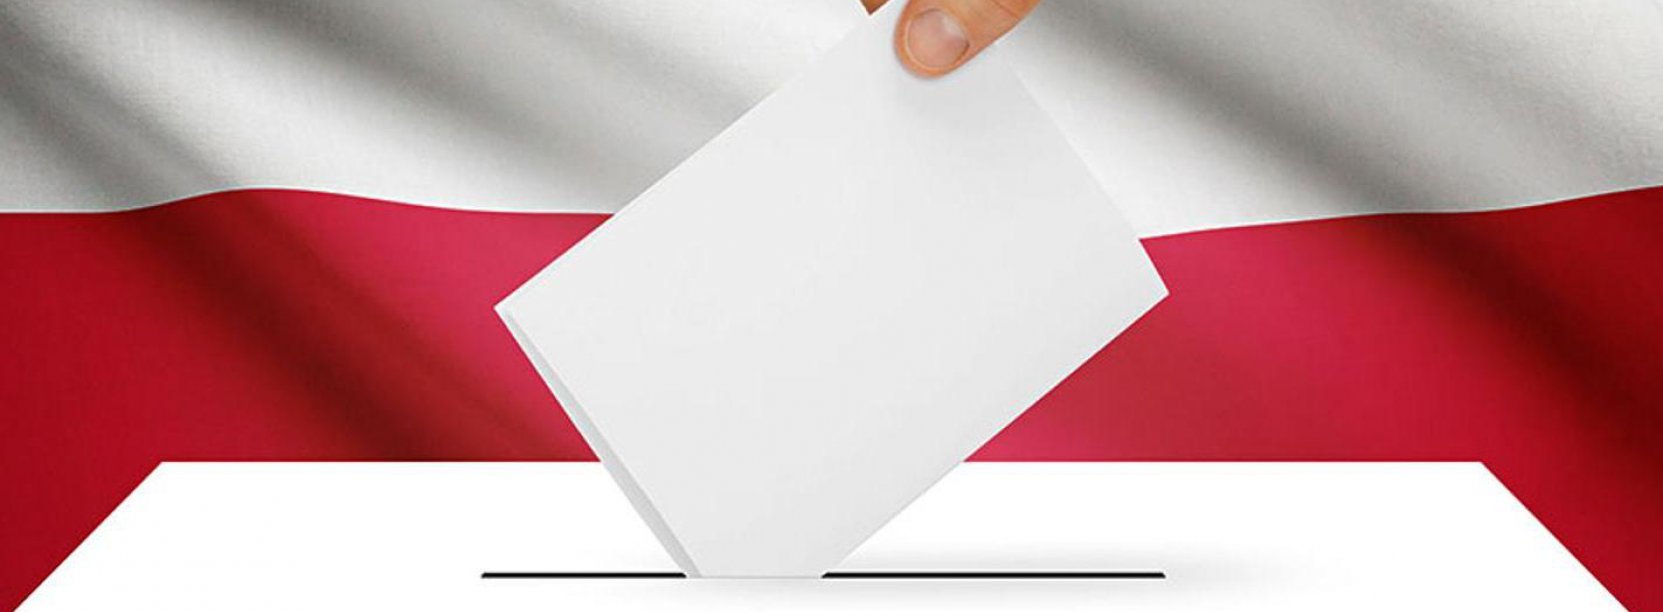 Fęka wkładająca kartę do urny do głosowania, w tle flaga Polski